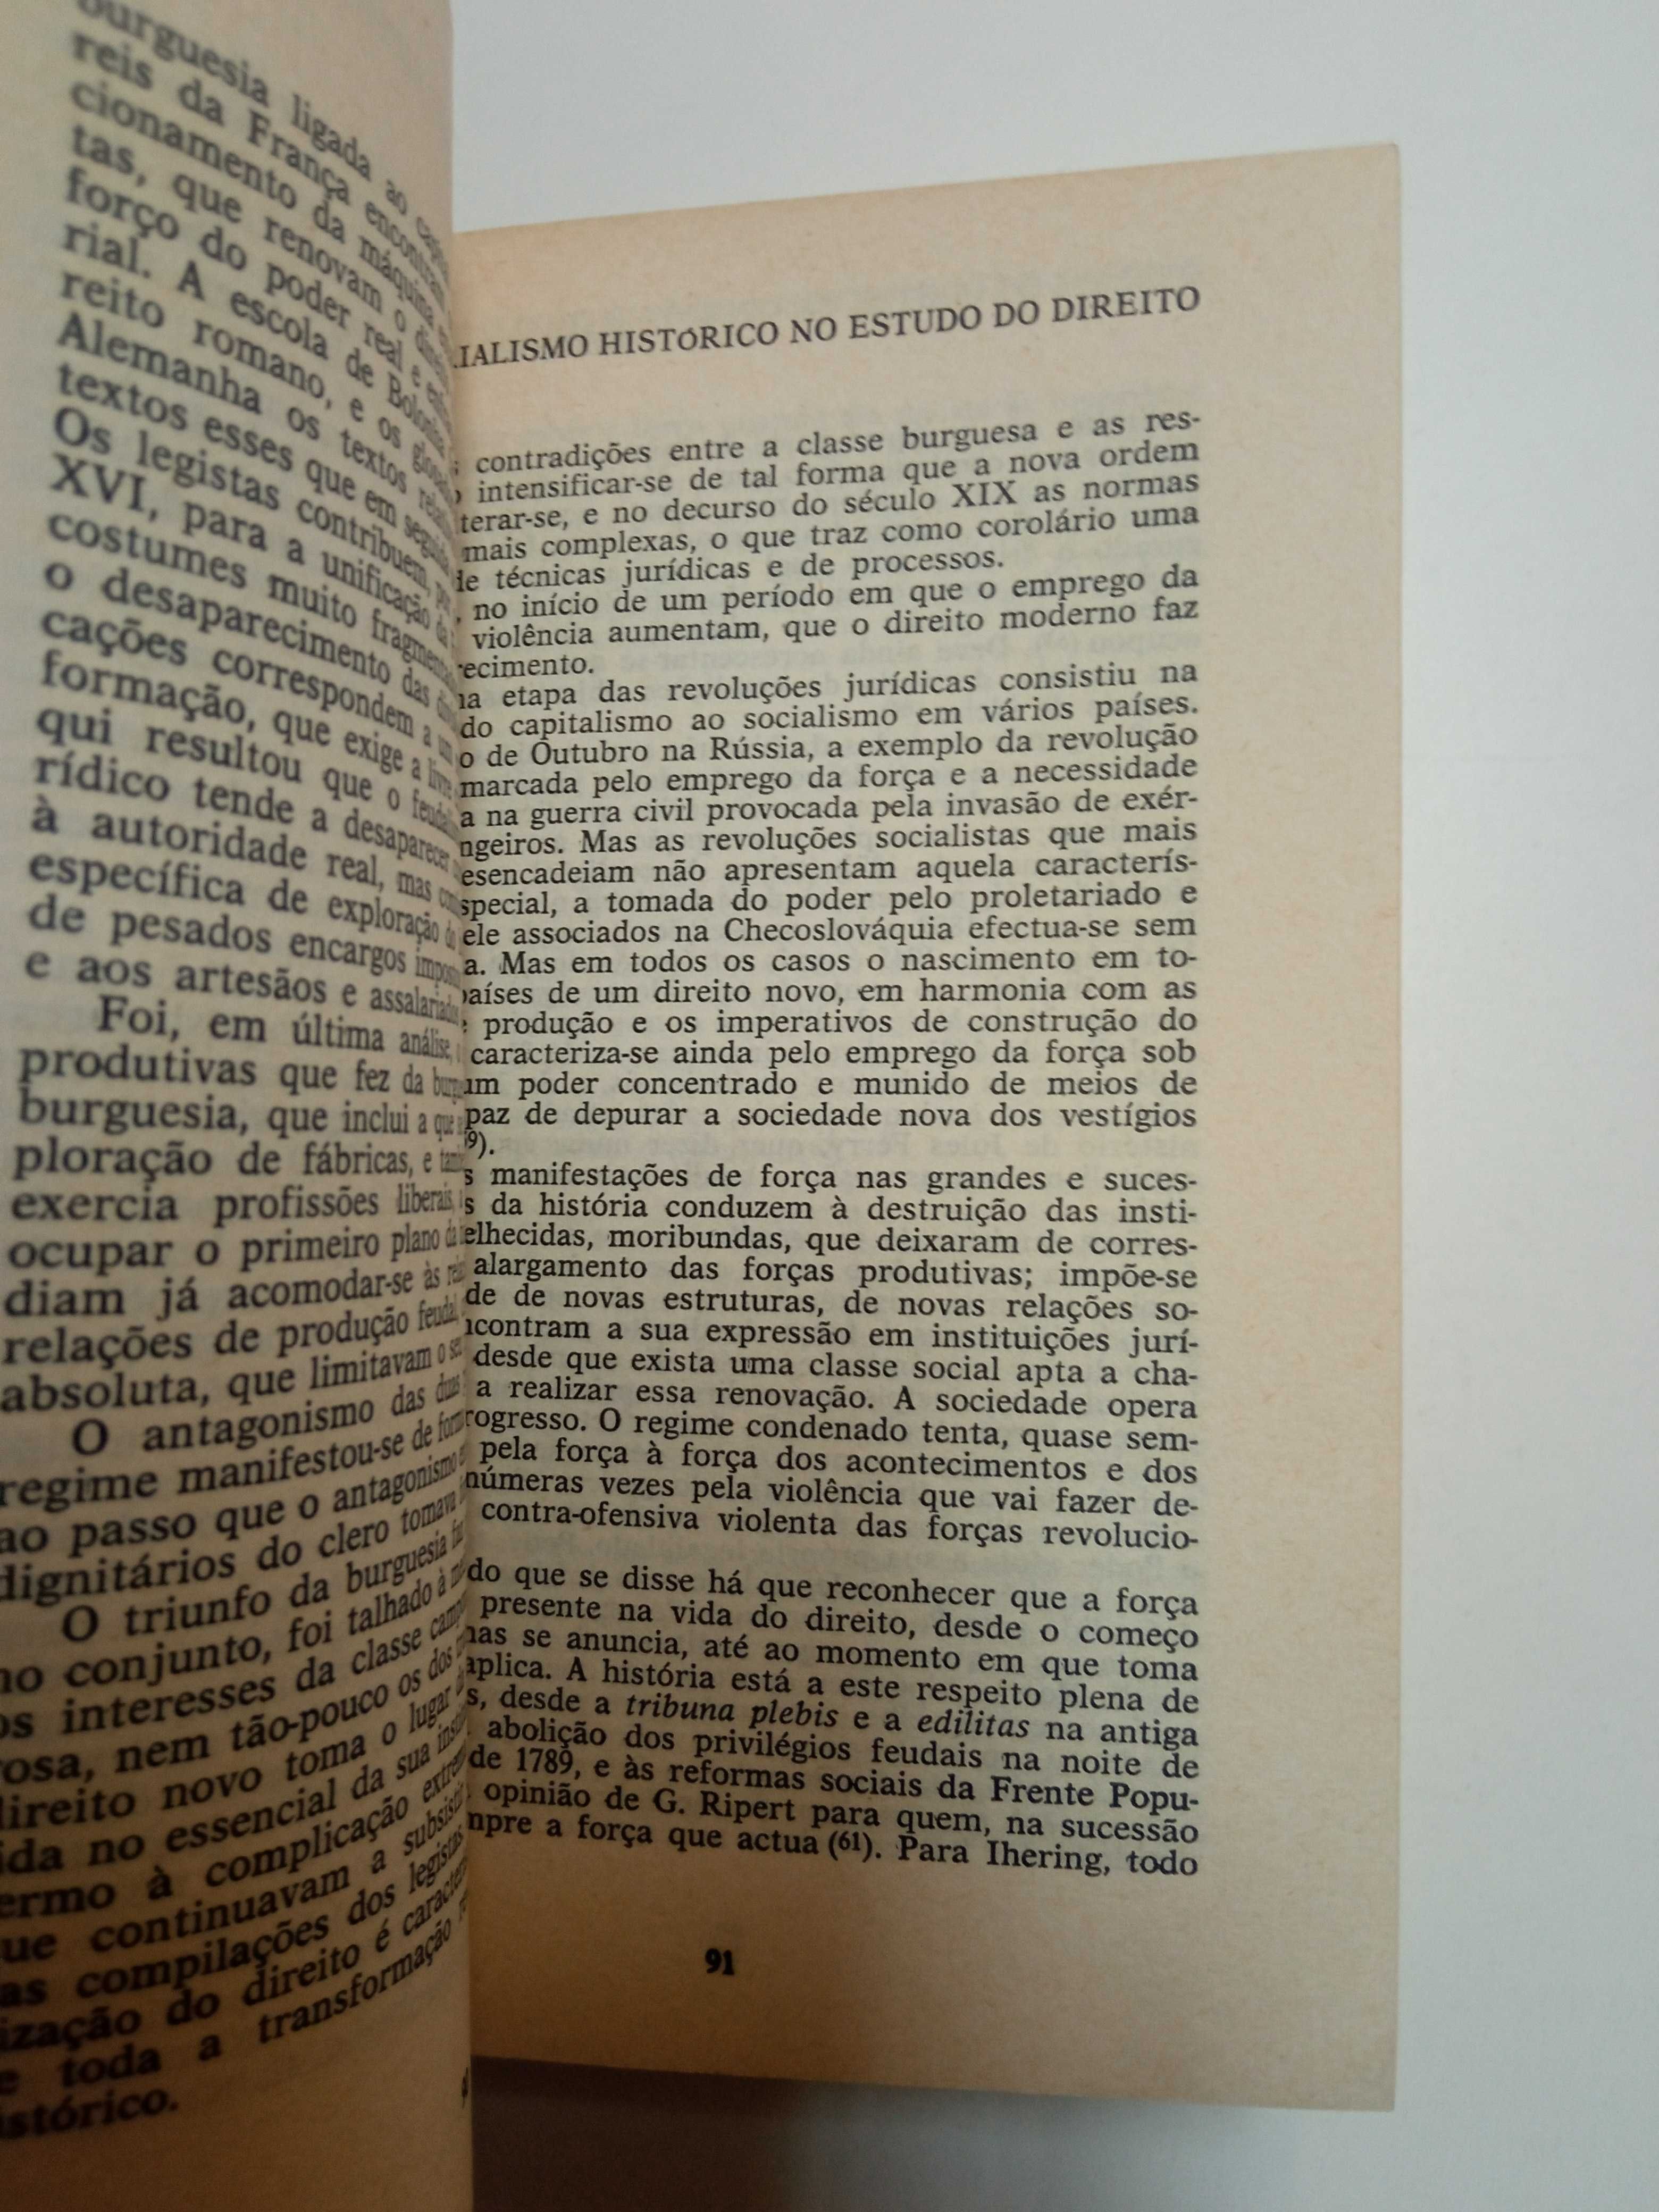 O Materialismo Histórico no Estudo do Direito, de Georges Sarotte